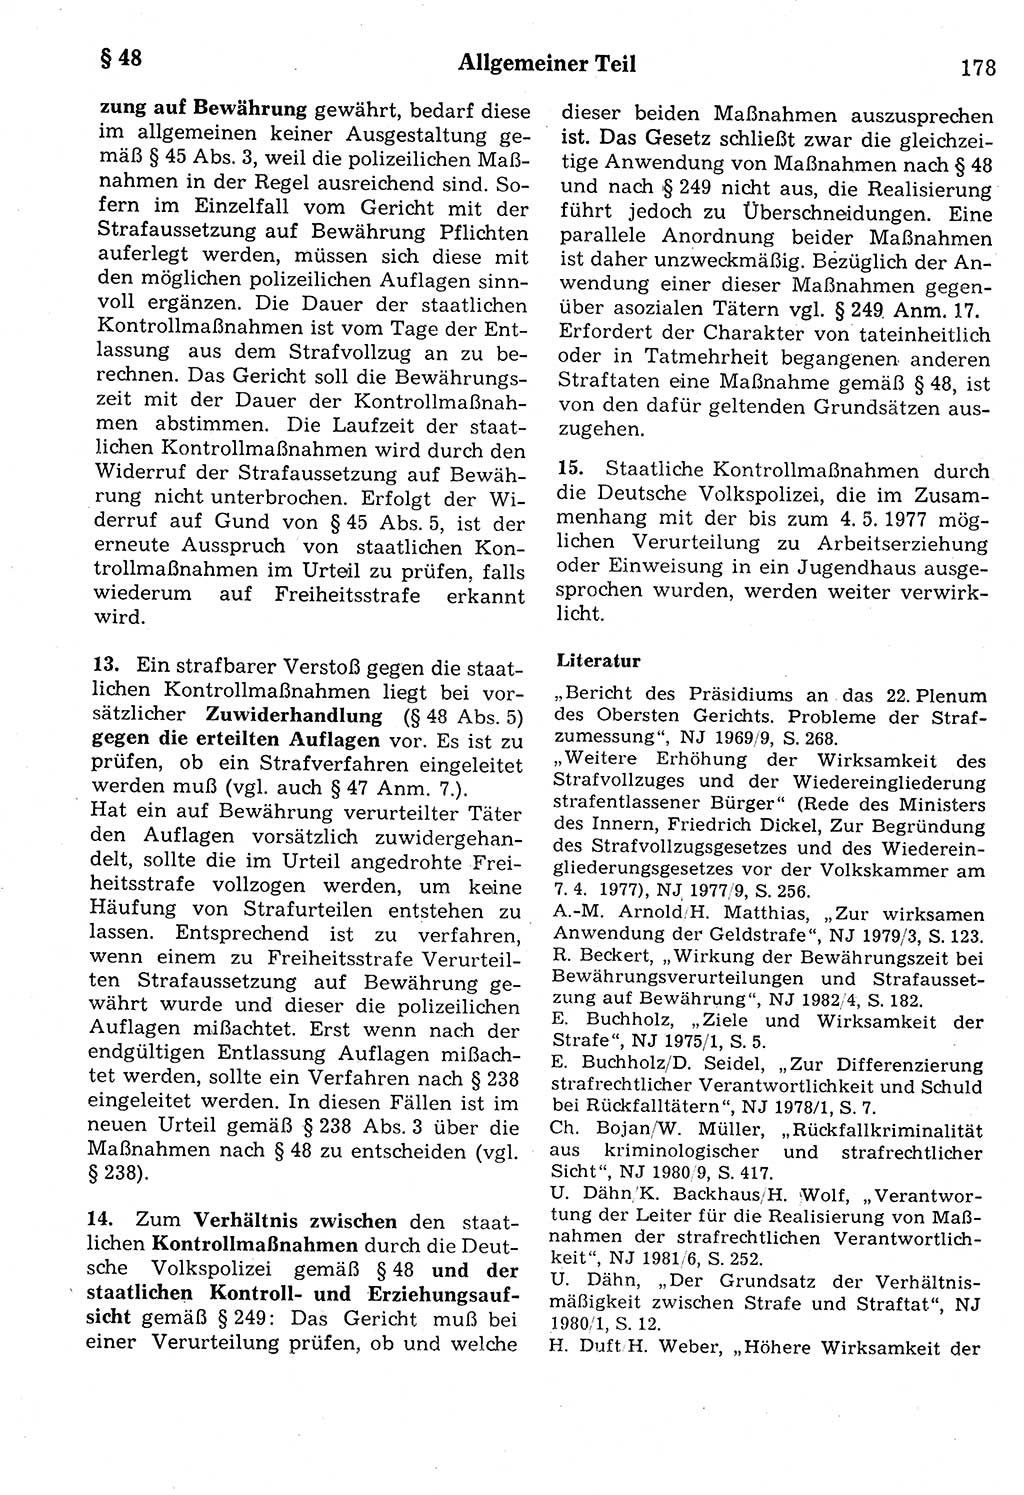 Strafrecht der Deutschen Demokratischen Republik (DDR), Kommentar zum Strafgesetzbuch (StGB) 1987, Seite 178 (Strafr. DDR Komm. StGB 1987, S. 178)